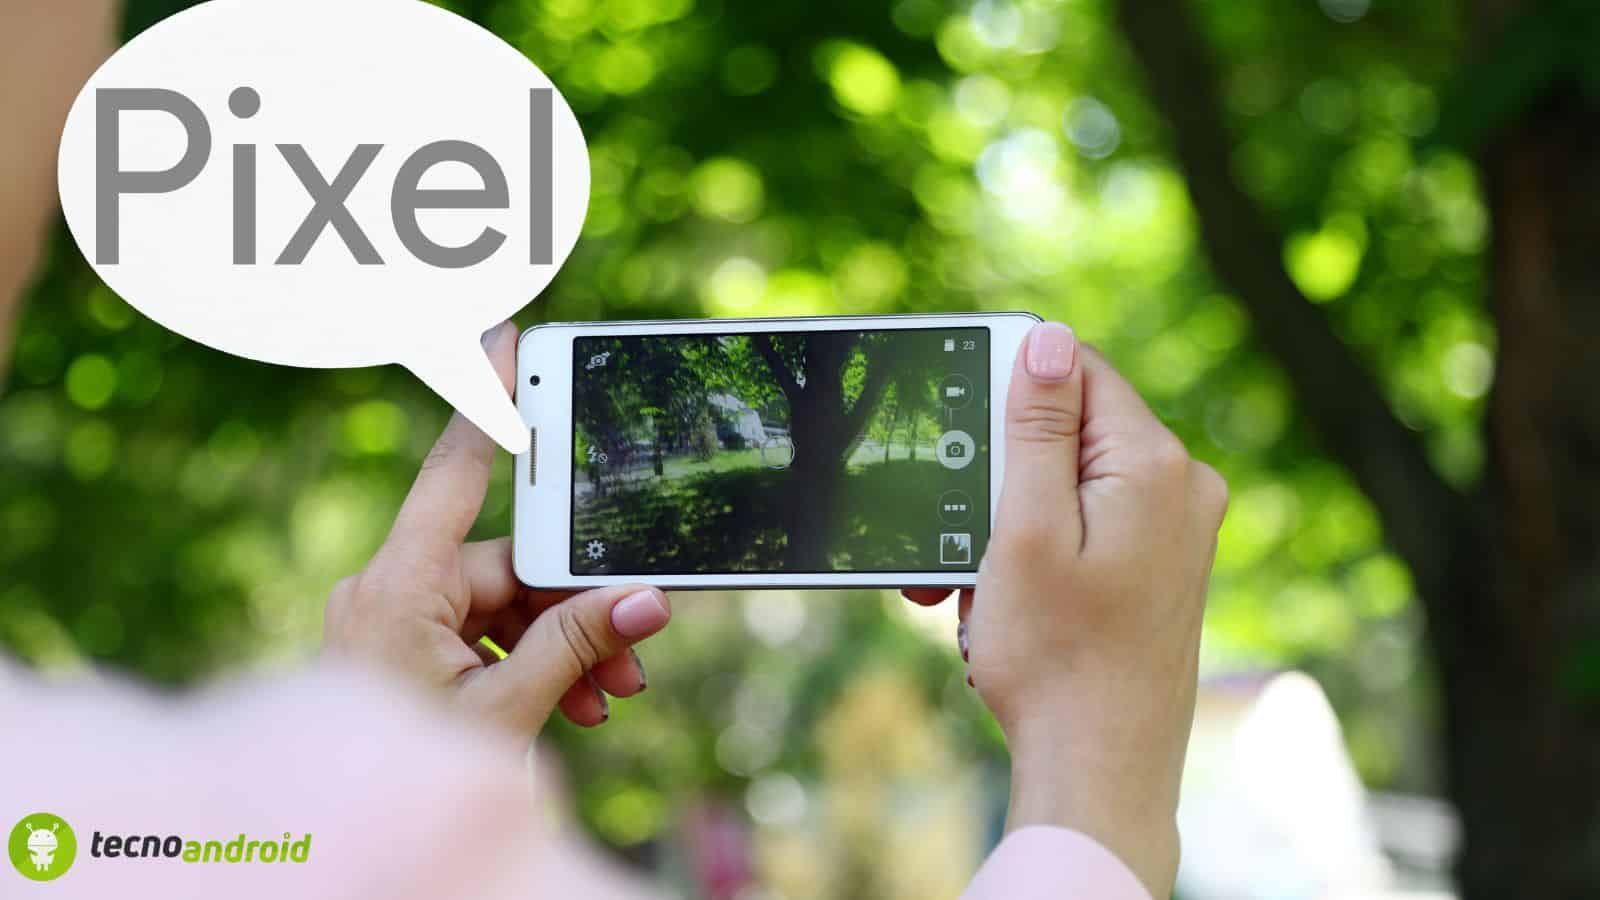  Fotocamera Pixel: l'ultimo aggiornamento offre nuove funzioni